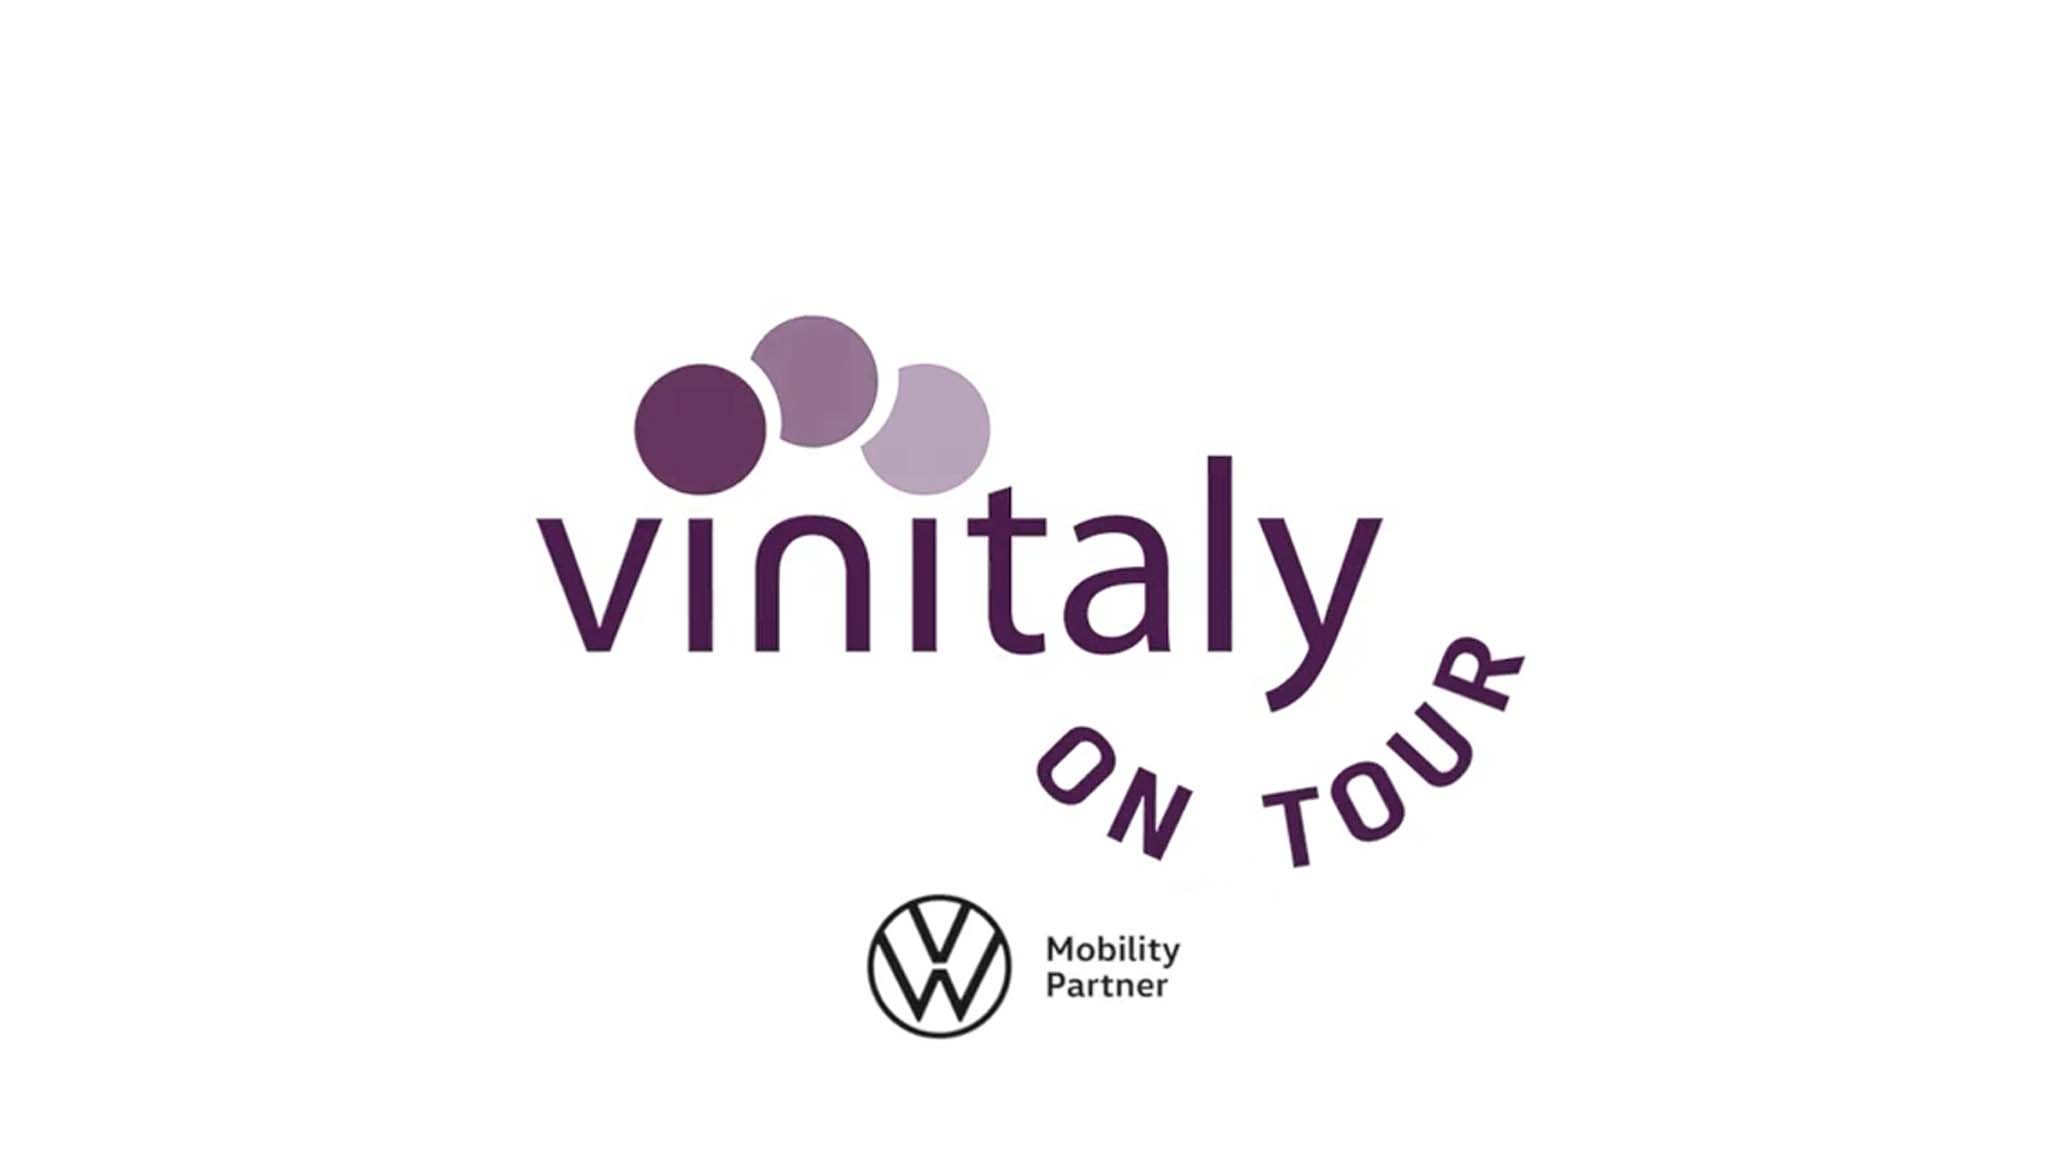 Al momento stai visualizzando Vinitaly on Tour, un viaggio per conoscere il mondo vinicolo